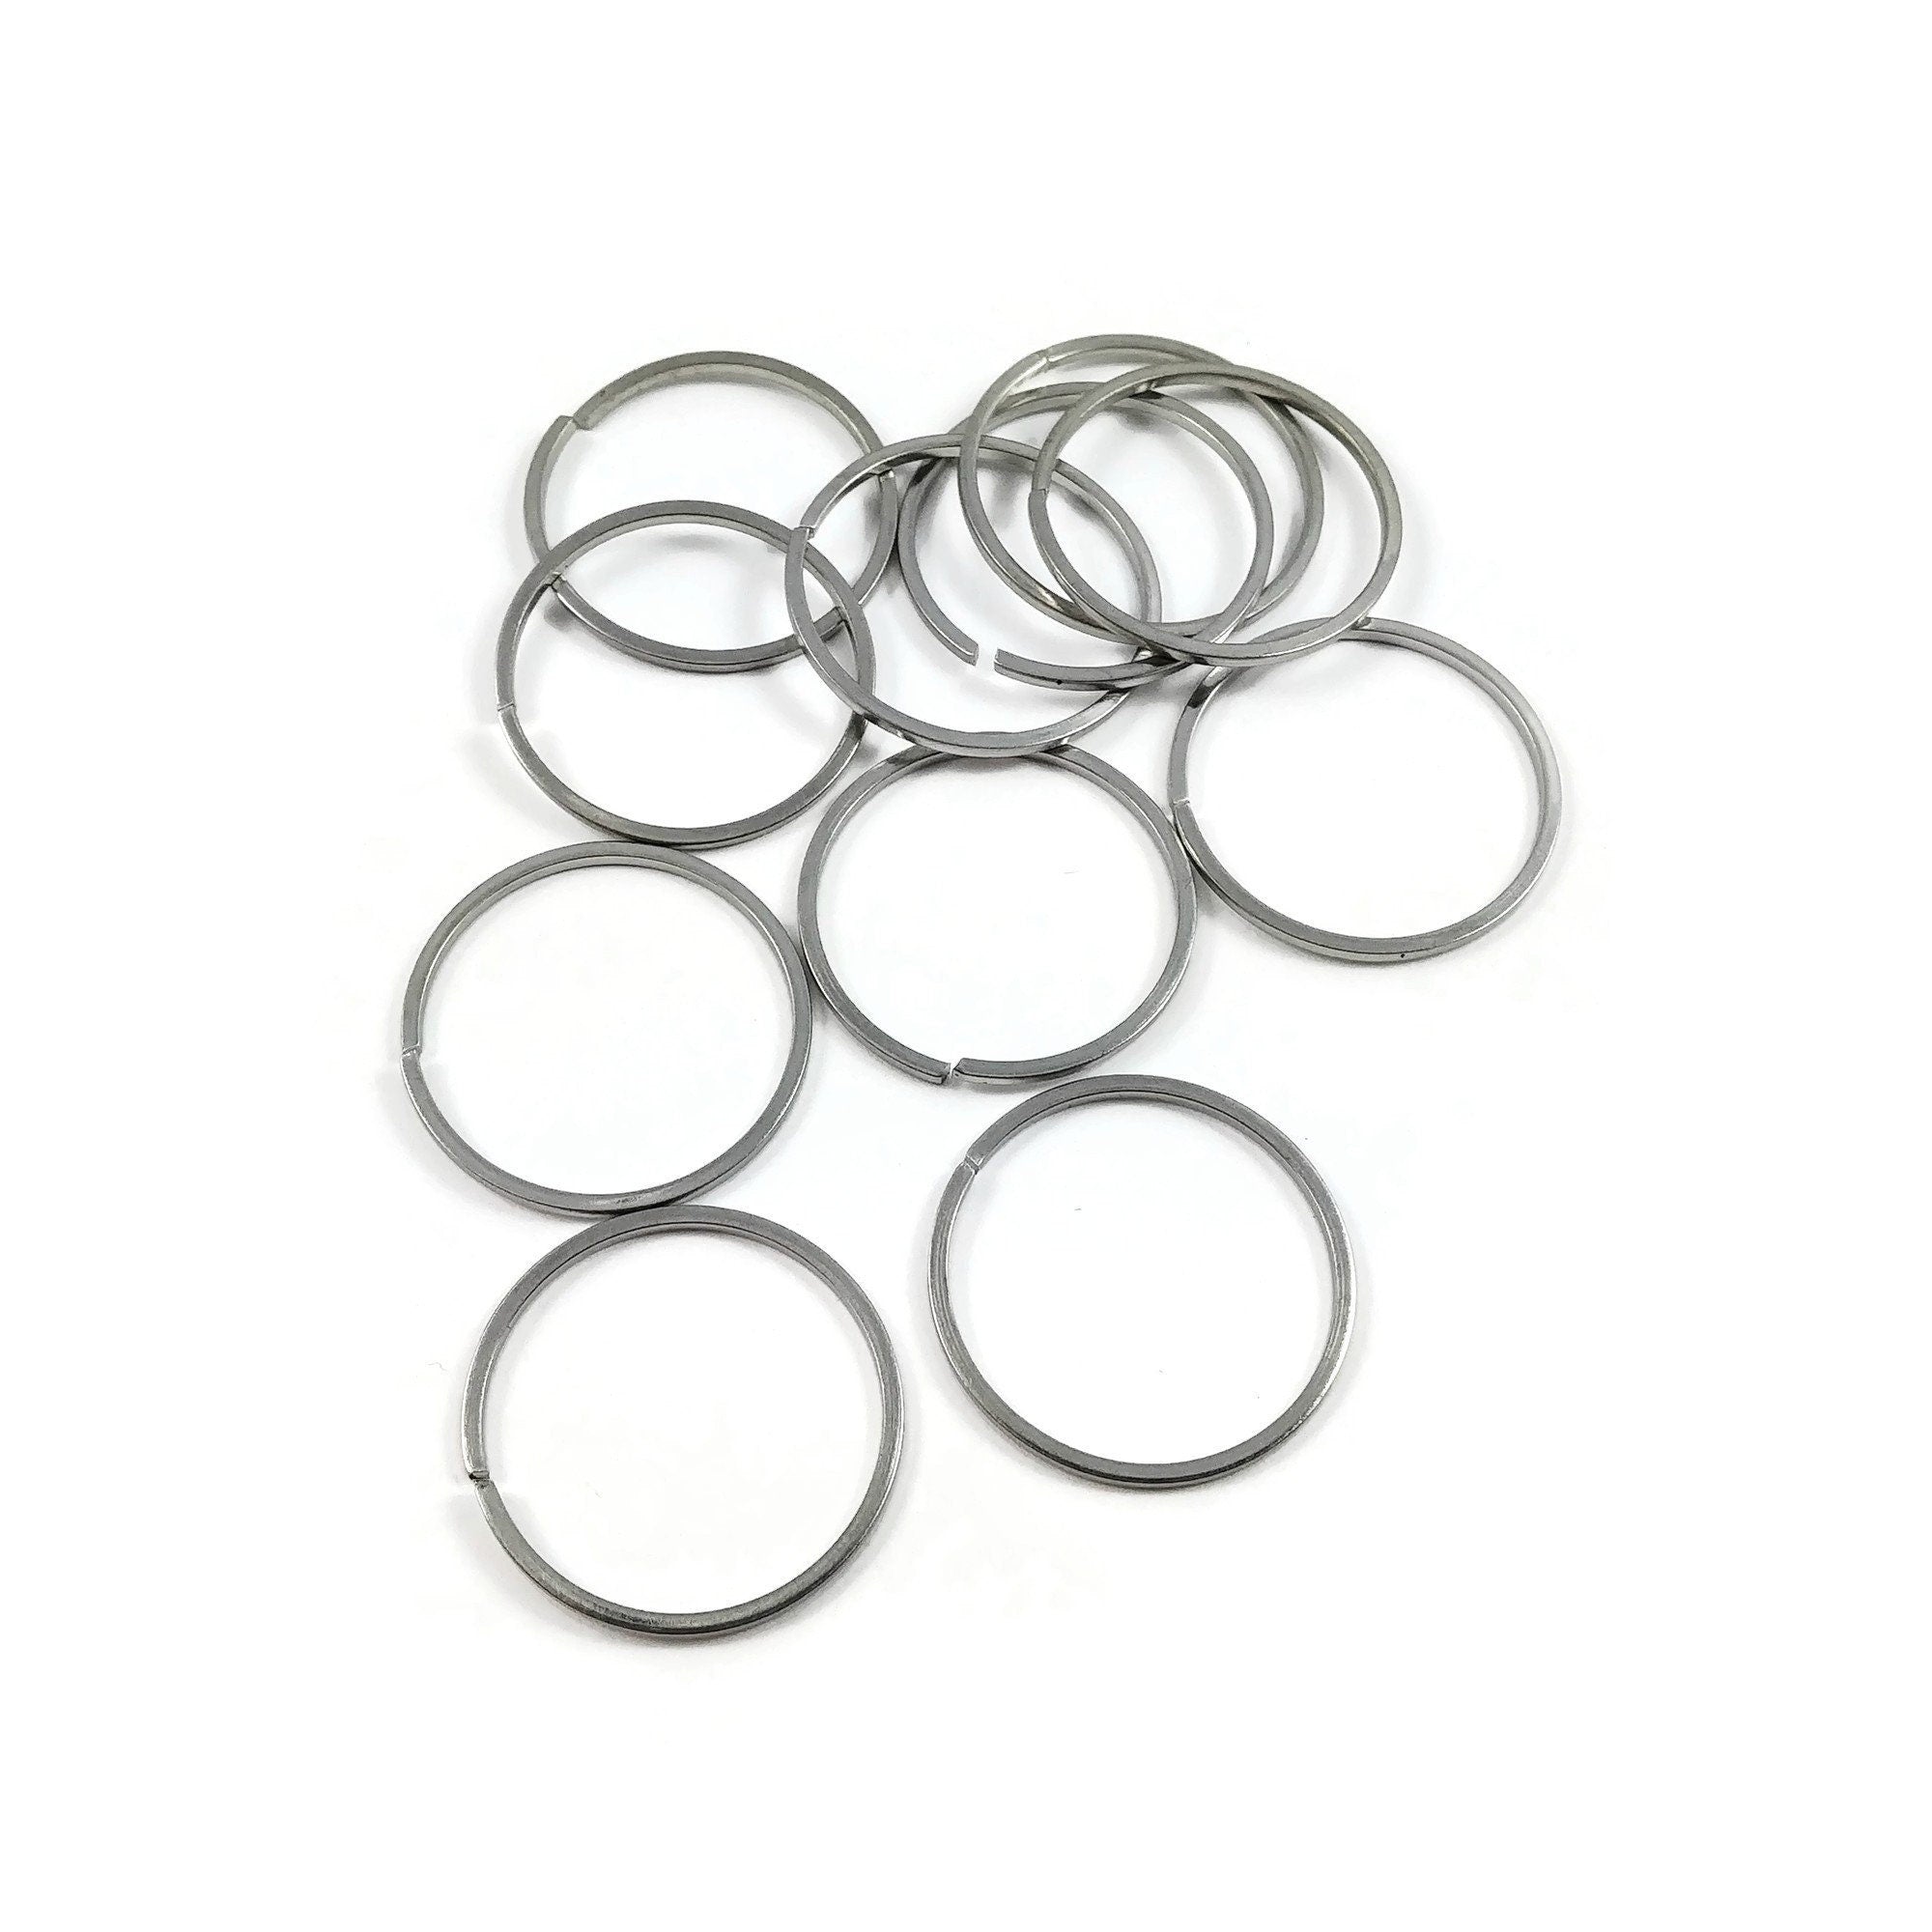 Buy Black jump rings - Black Stainless Steel rings